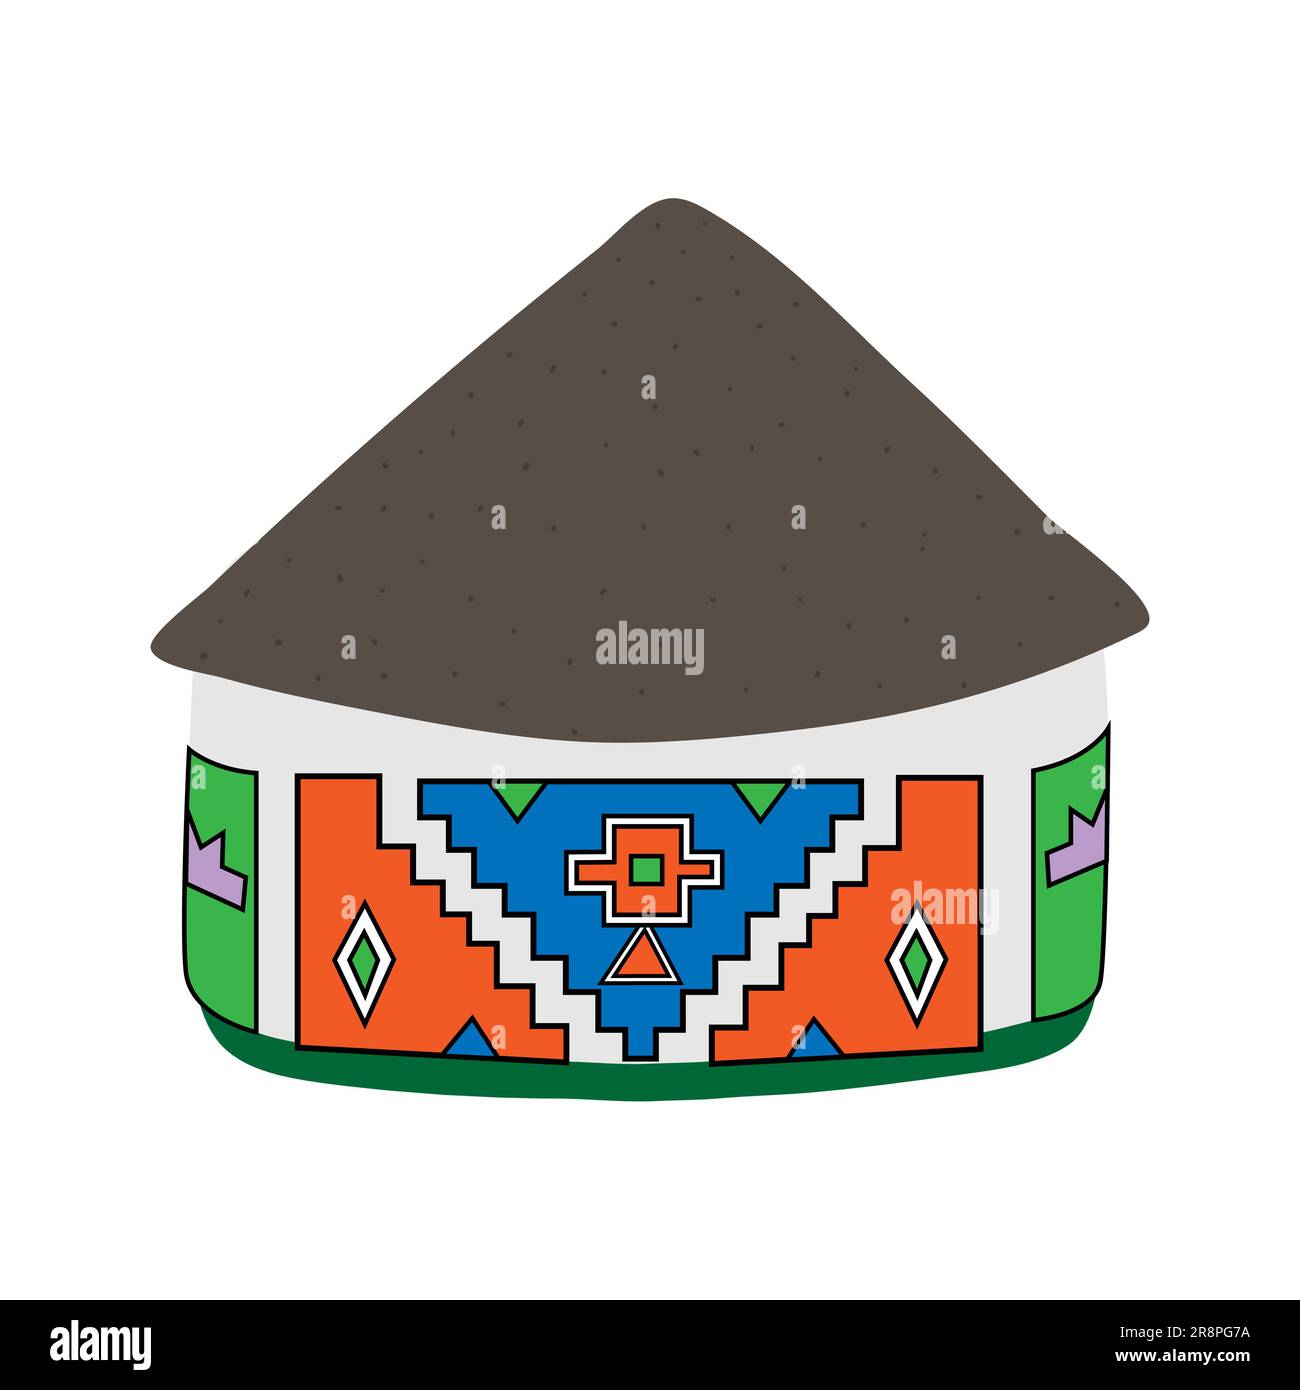 Afrikanisches Ndebele-Haus mit grauem Strohdach, isoliert auf weißem Hintergrund. In hellen Farben gehaltene Tonwände. Geometrisches Muster. Handgezeichnetes Kritzelchen Stock Vektor